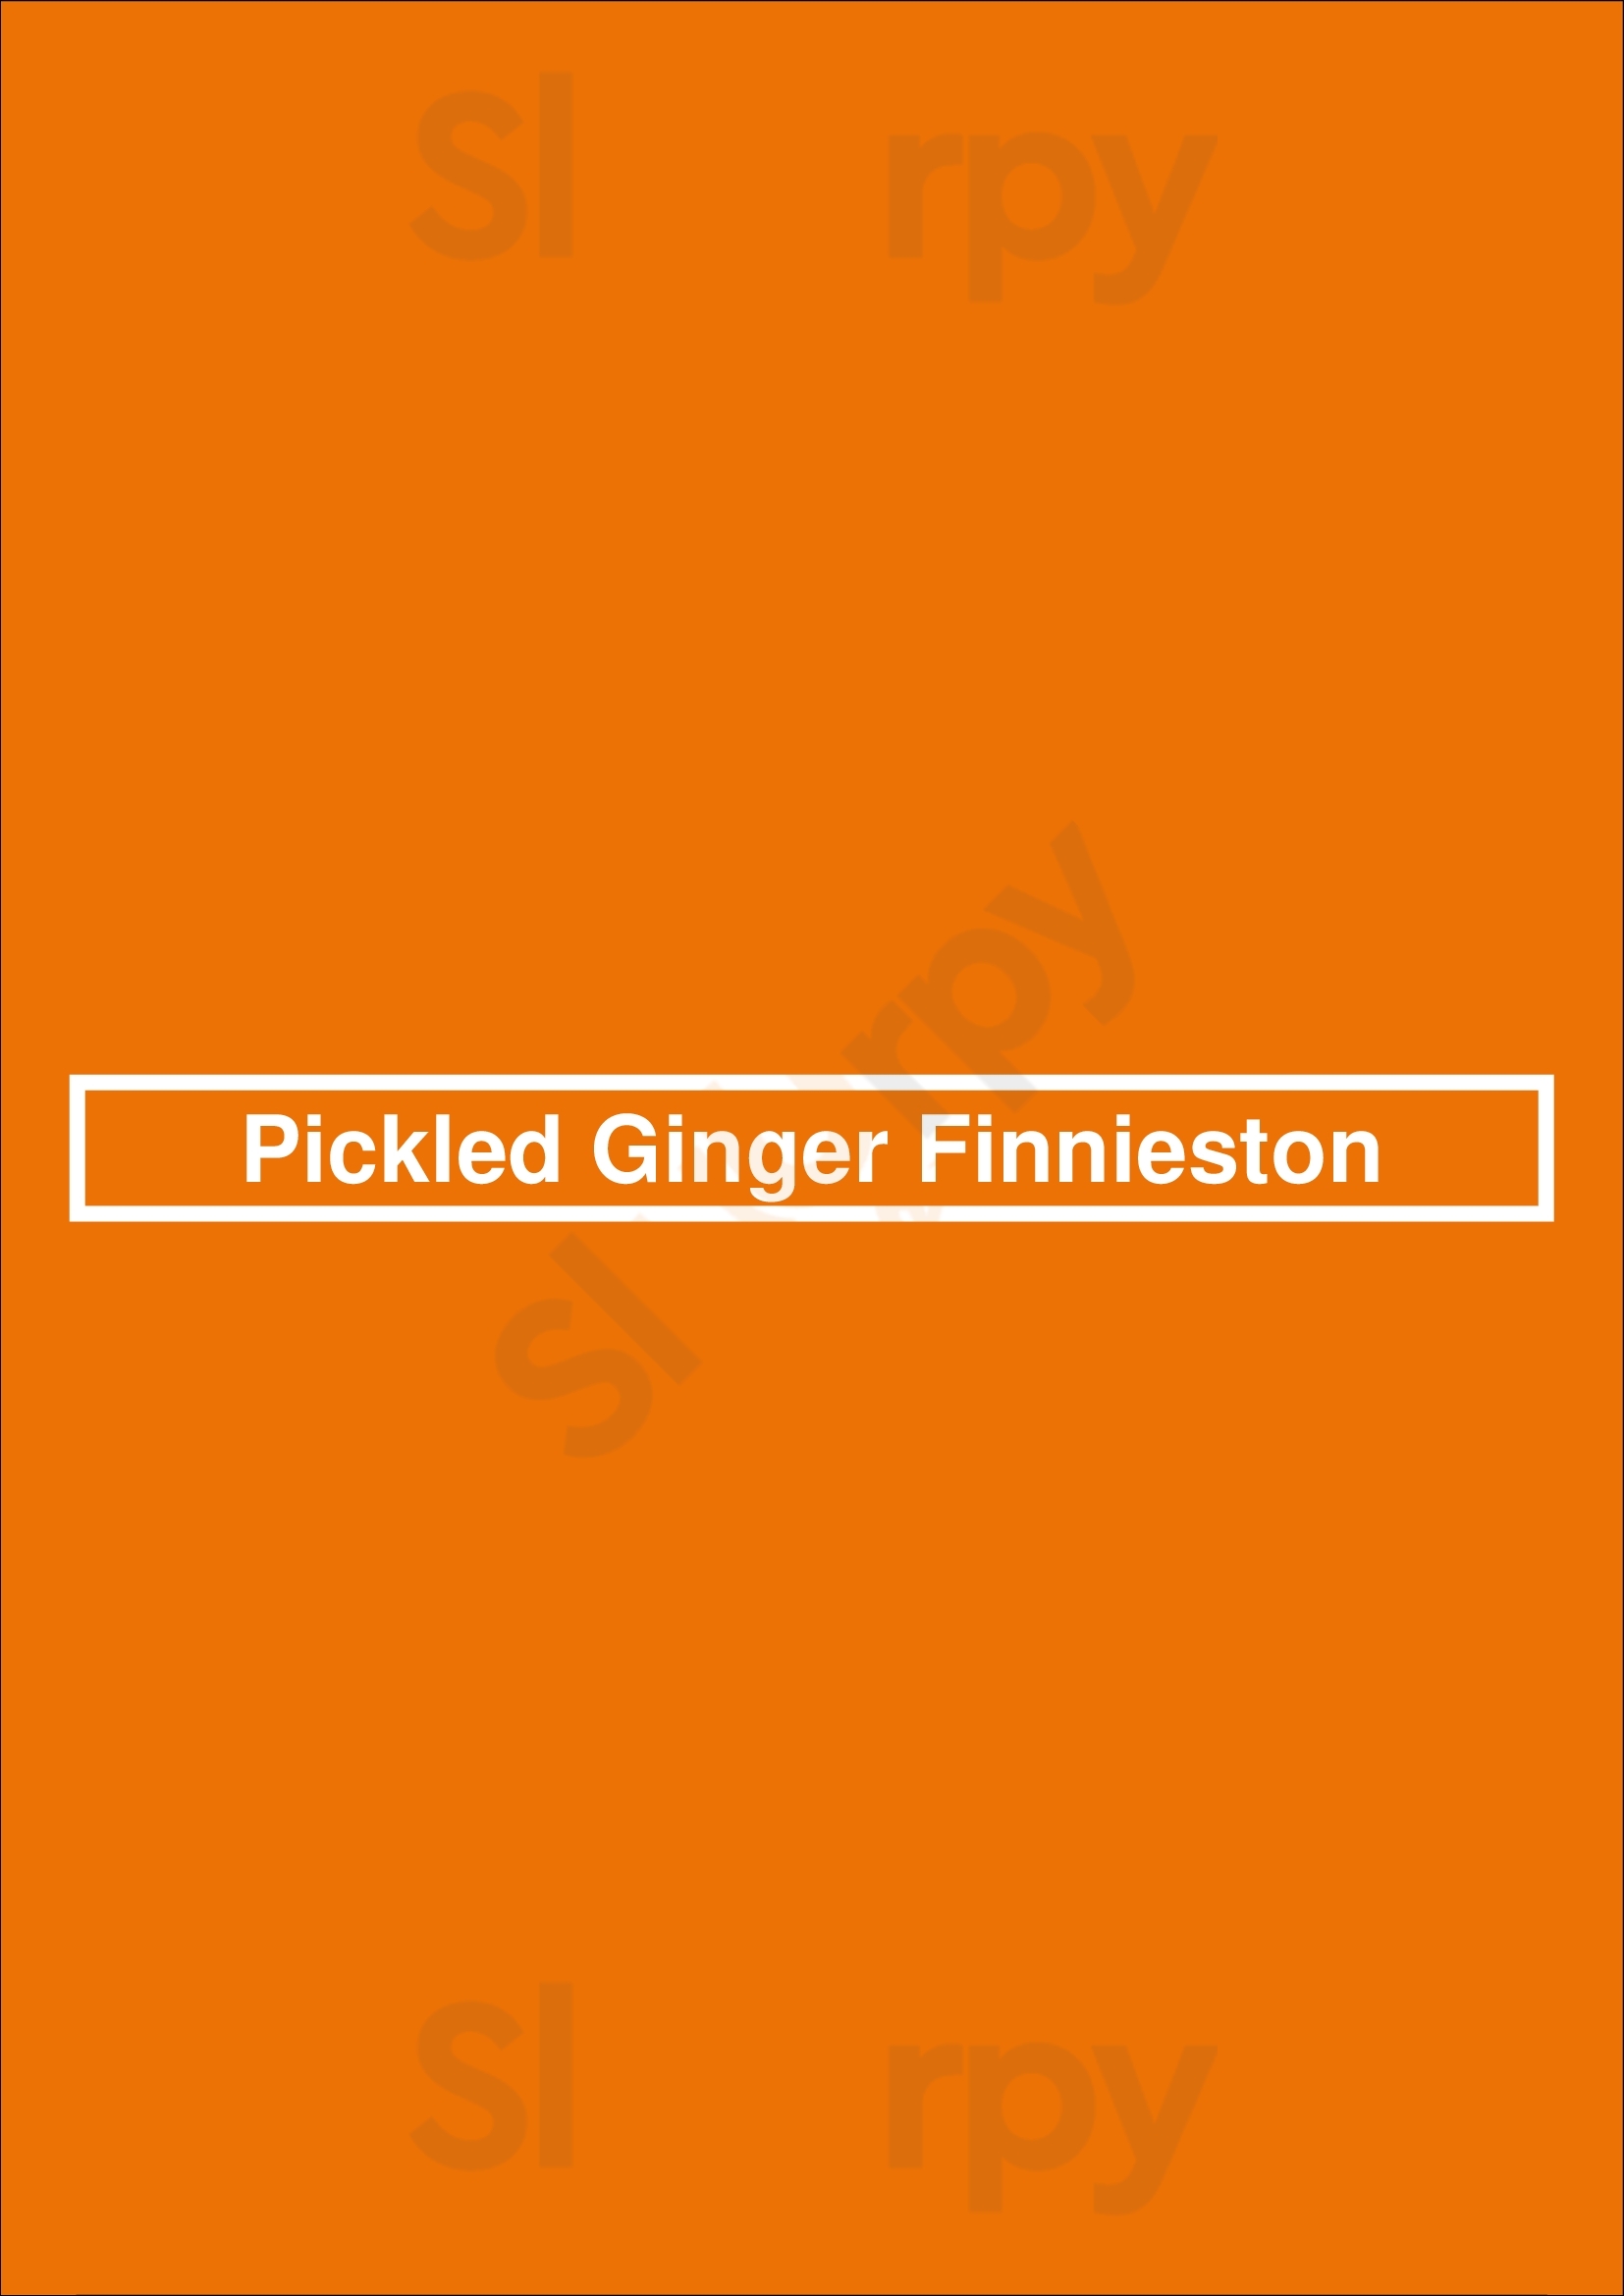 Pickled Ginger Finnieston Glasgow Menu - 1